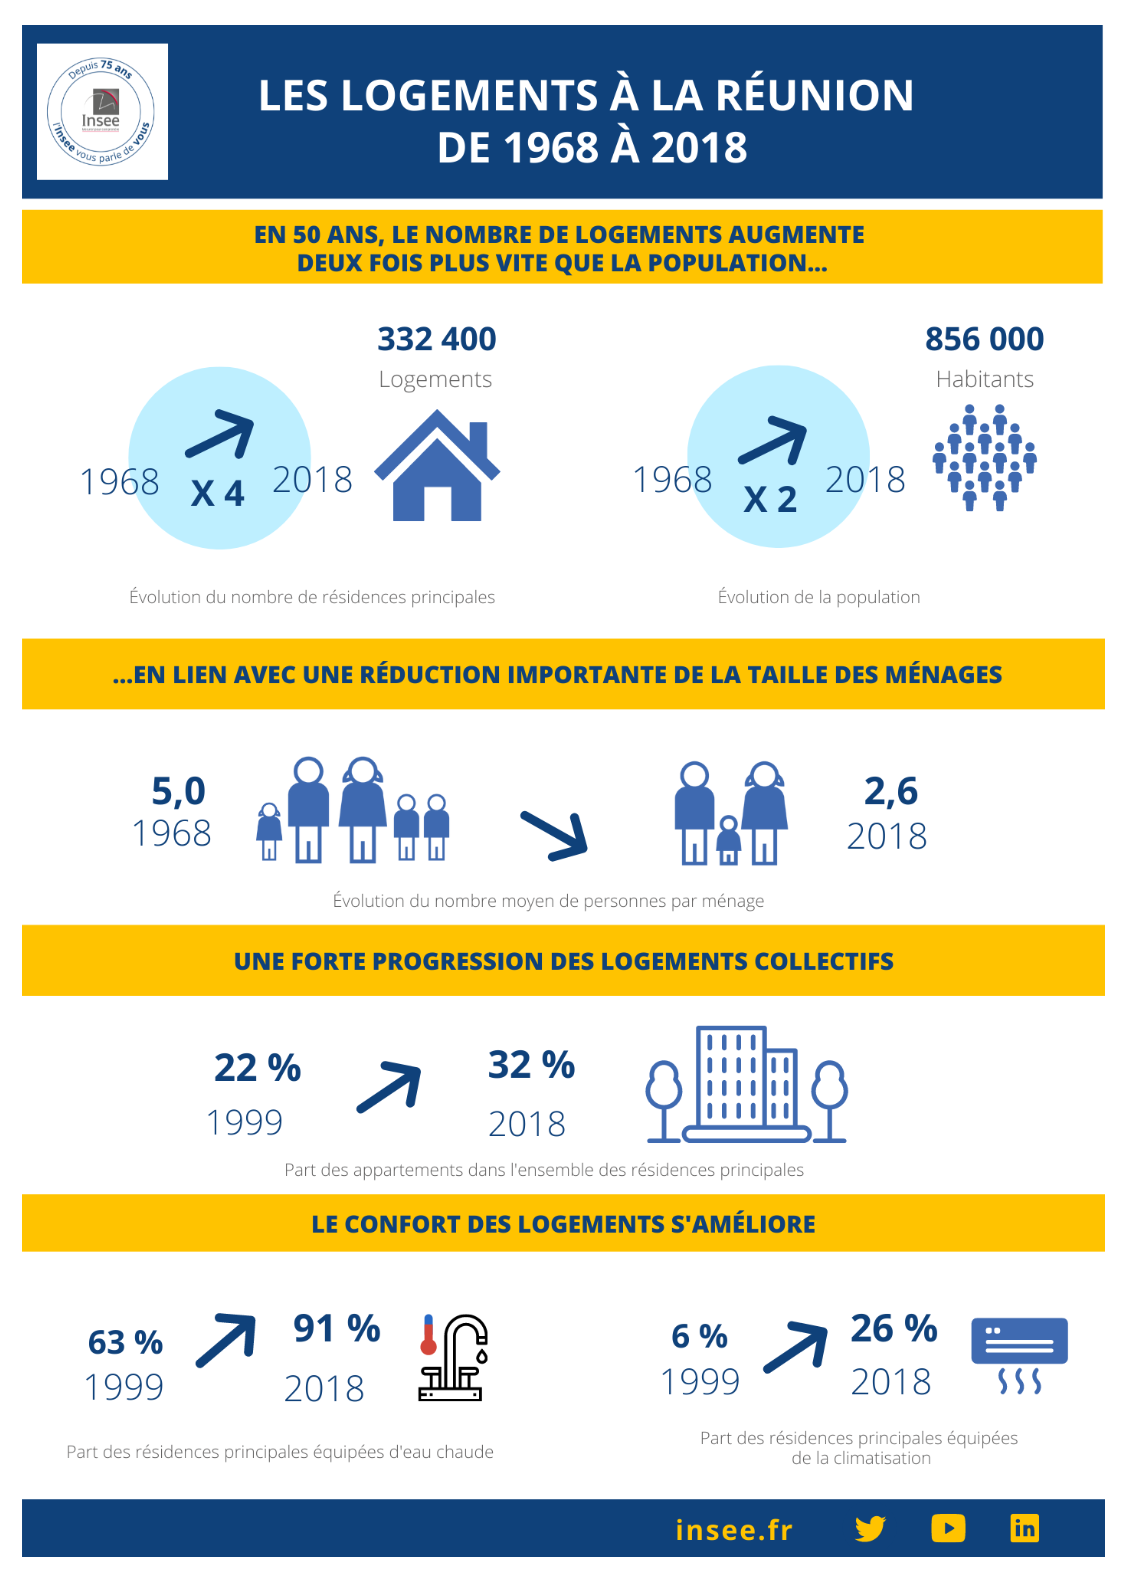 En 50 ans, le nombre de logements à La Réunion a été multiplié par 4